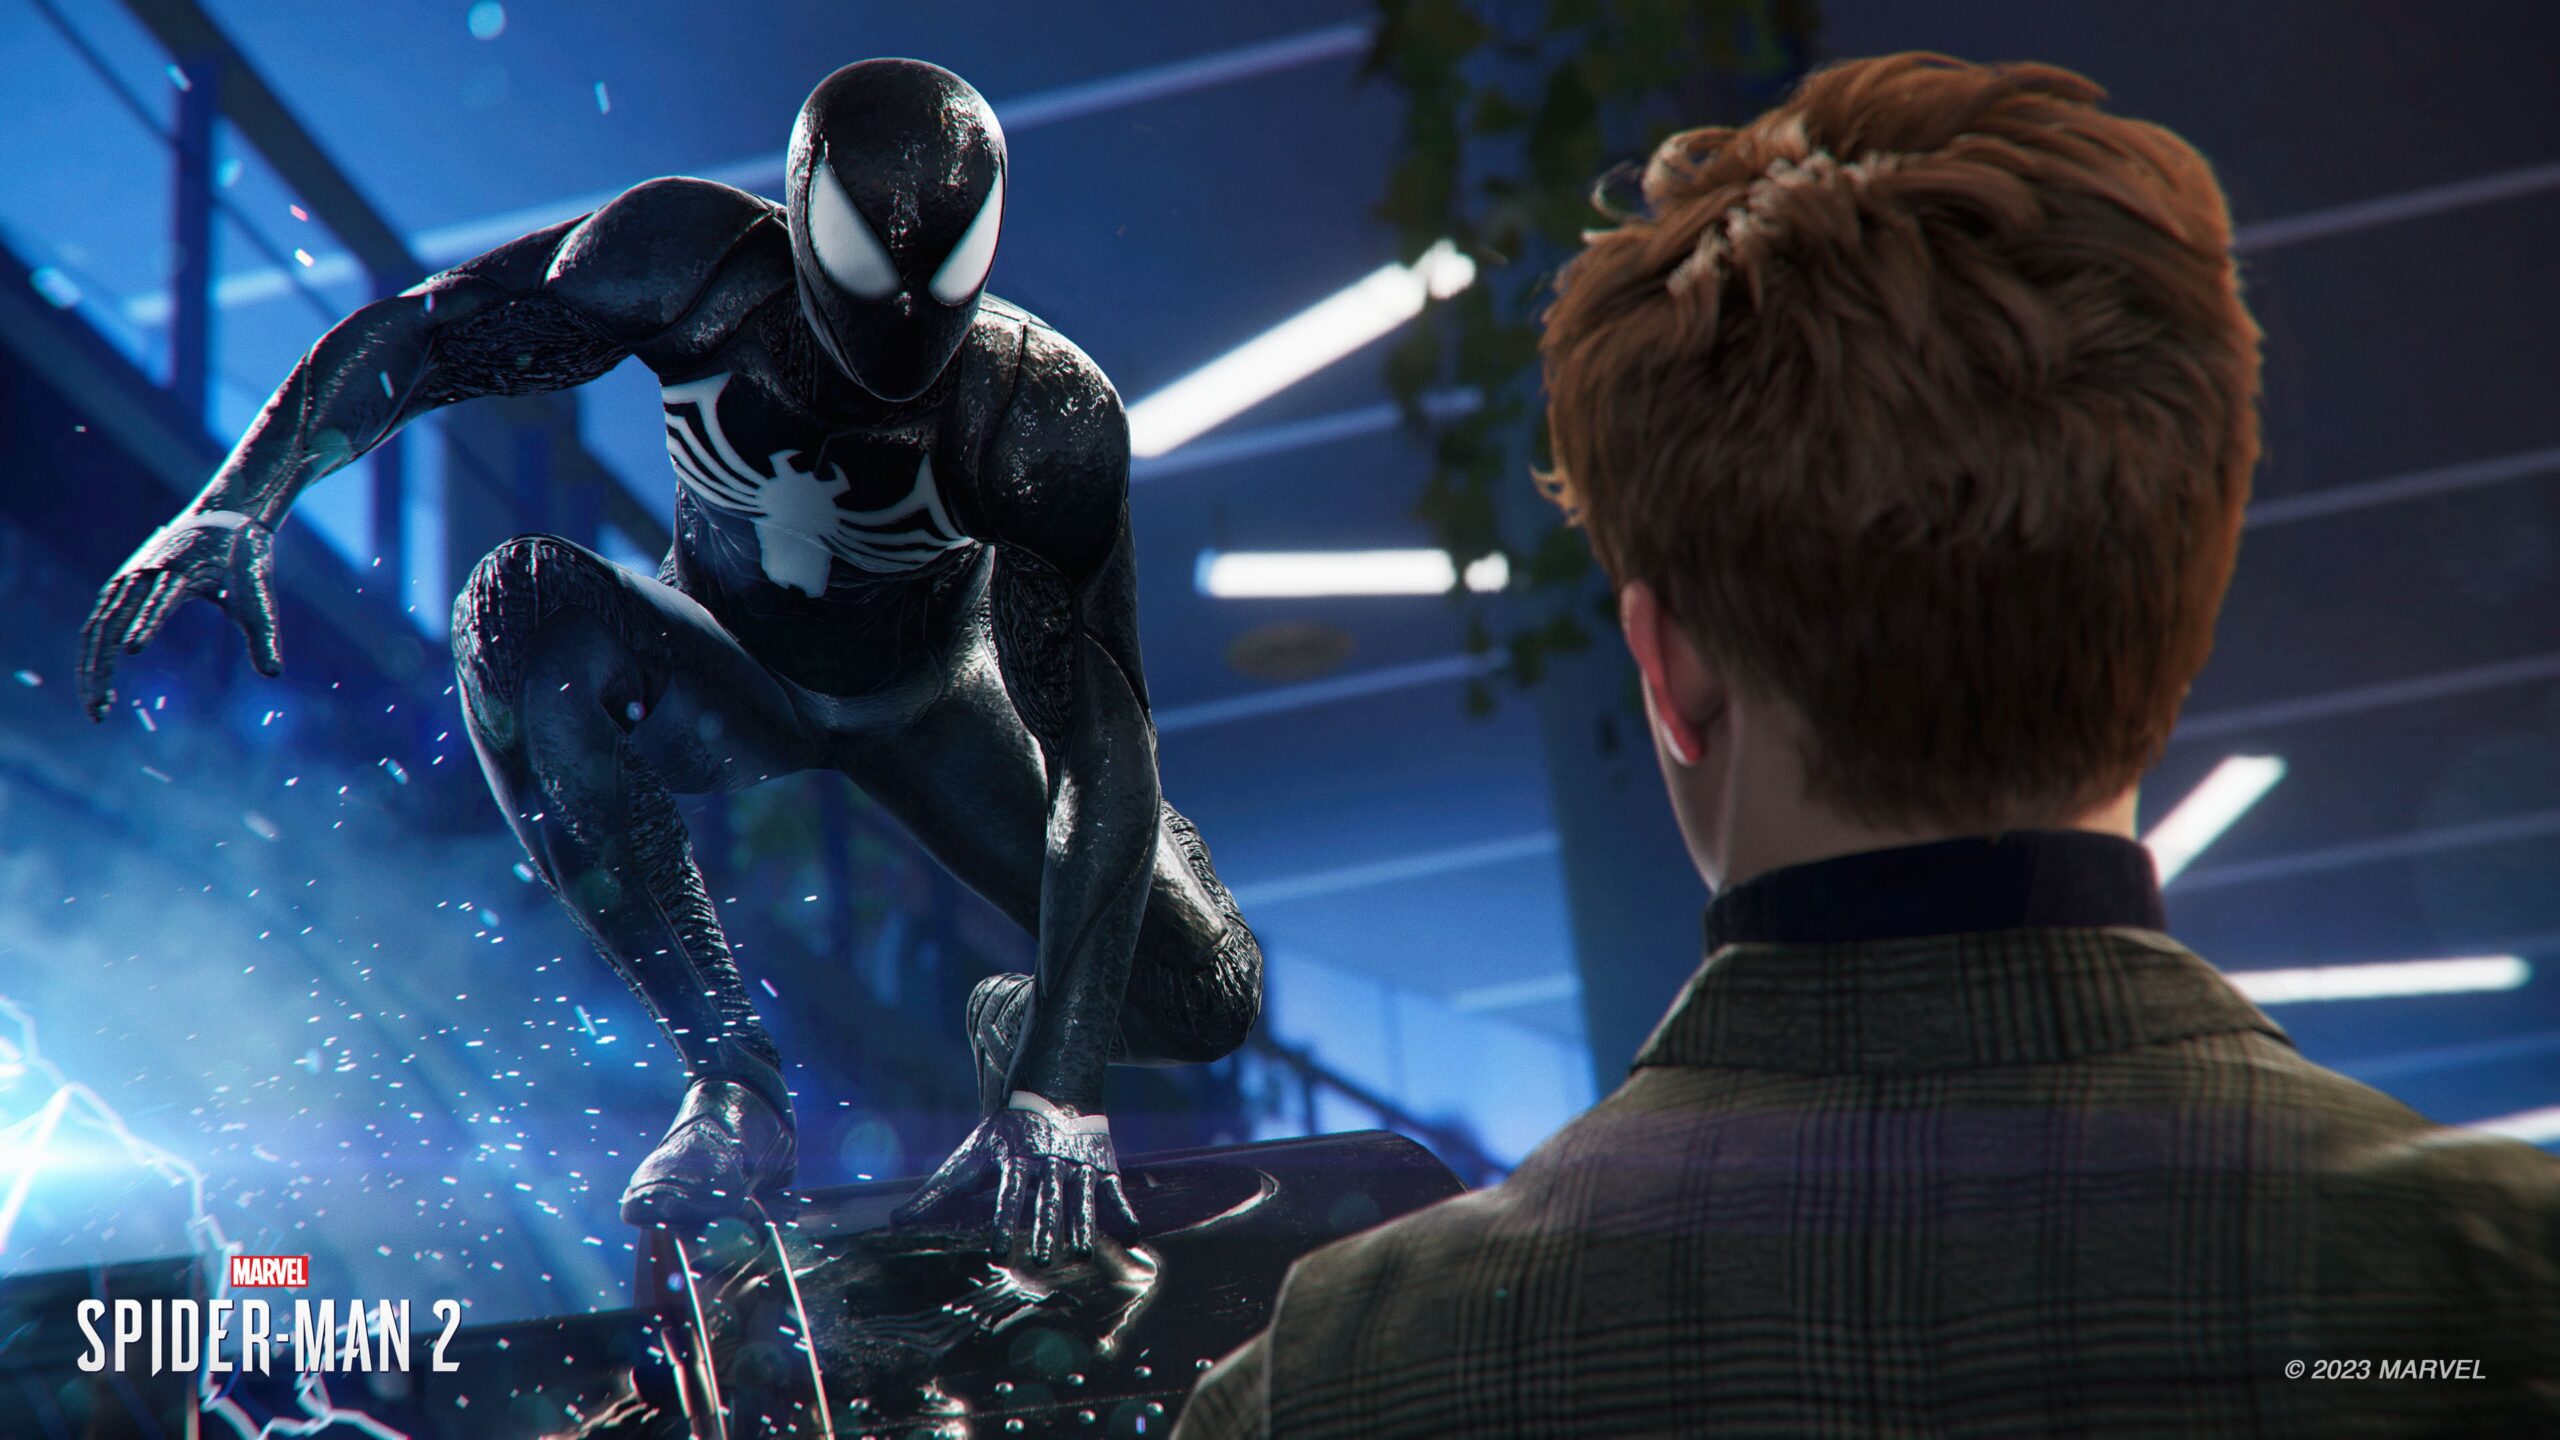 Jogos Spider-Man da Sony já venderam mais de 33 milhões de unidades